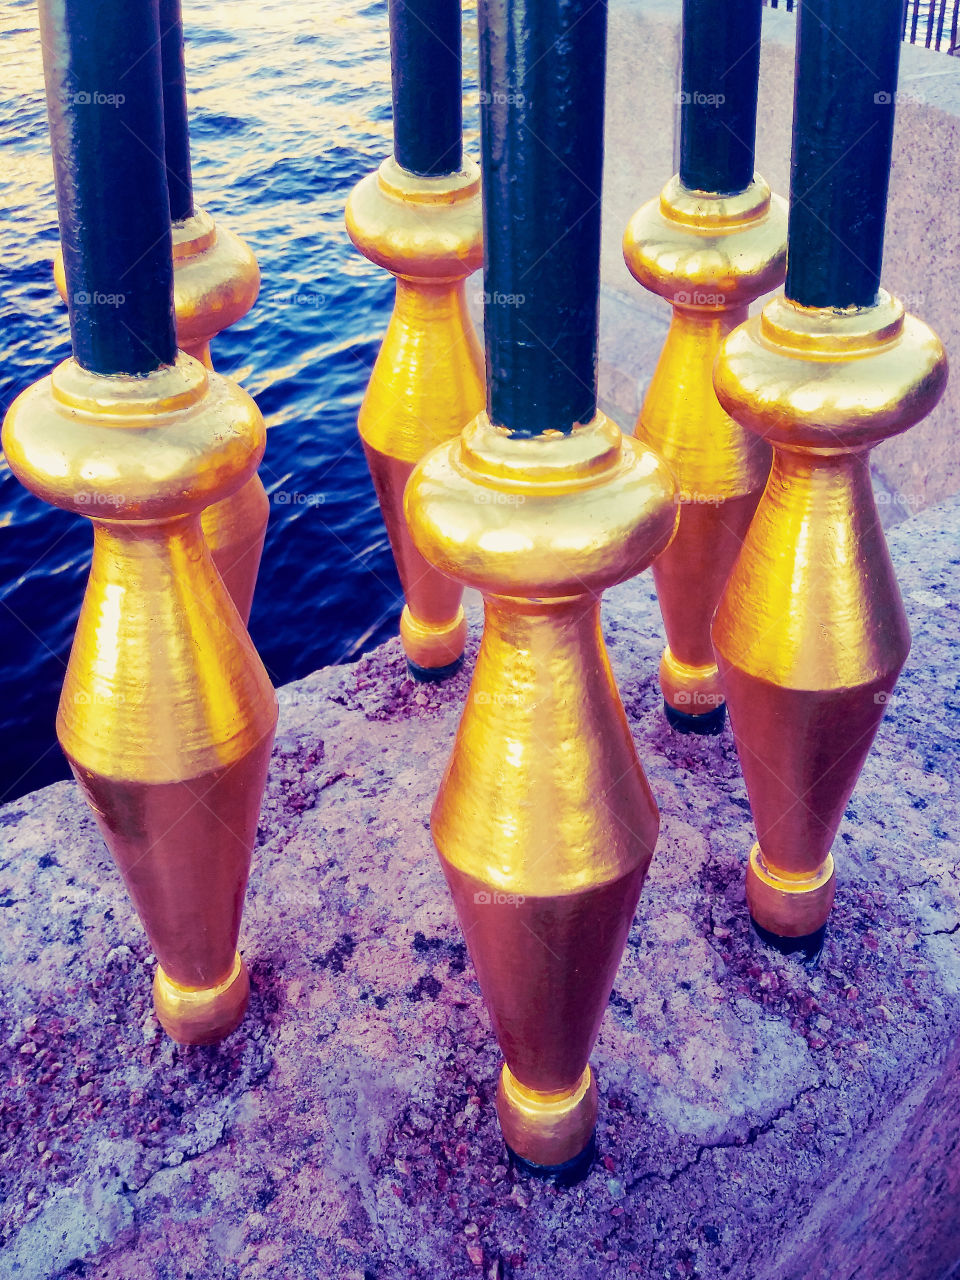 Golden pillars